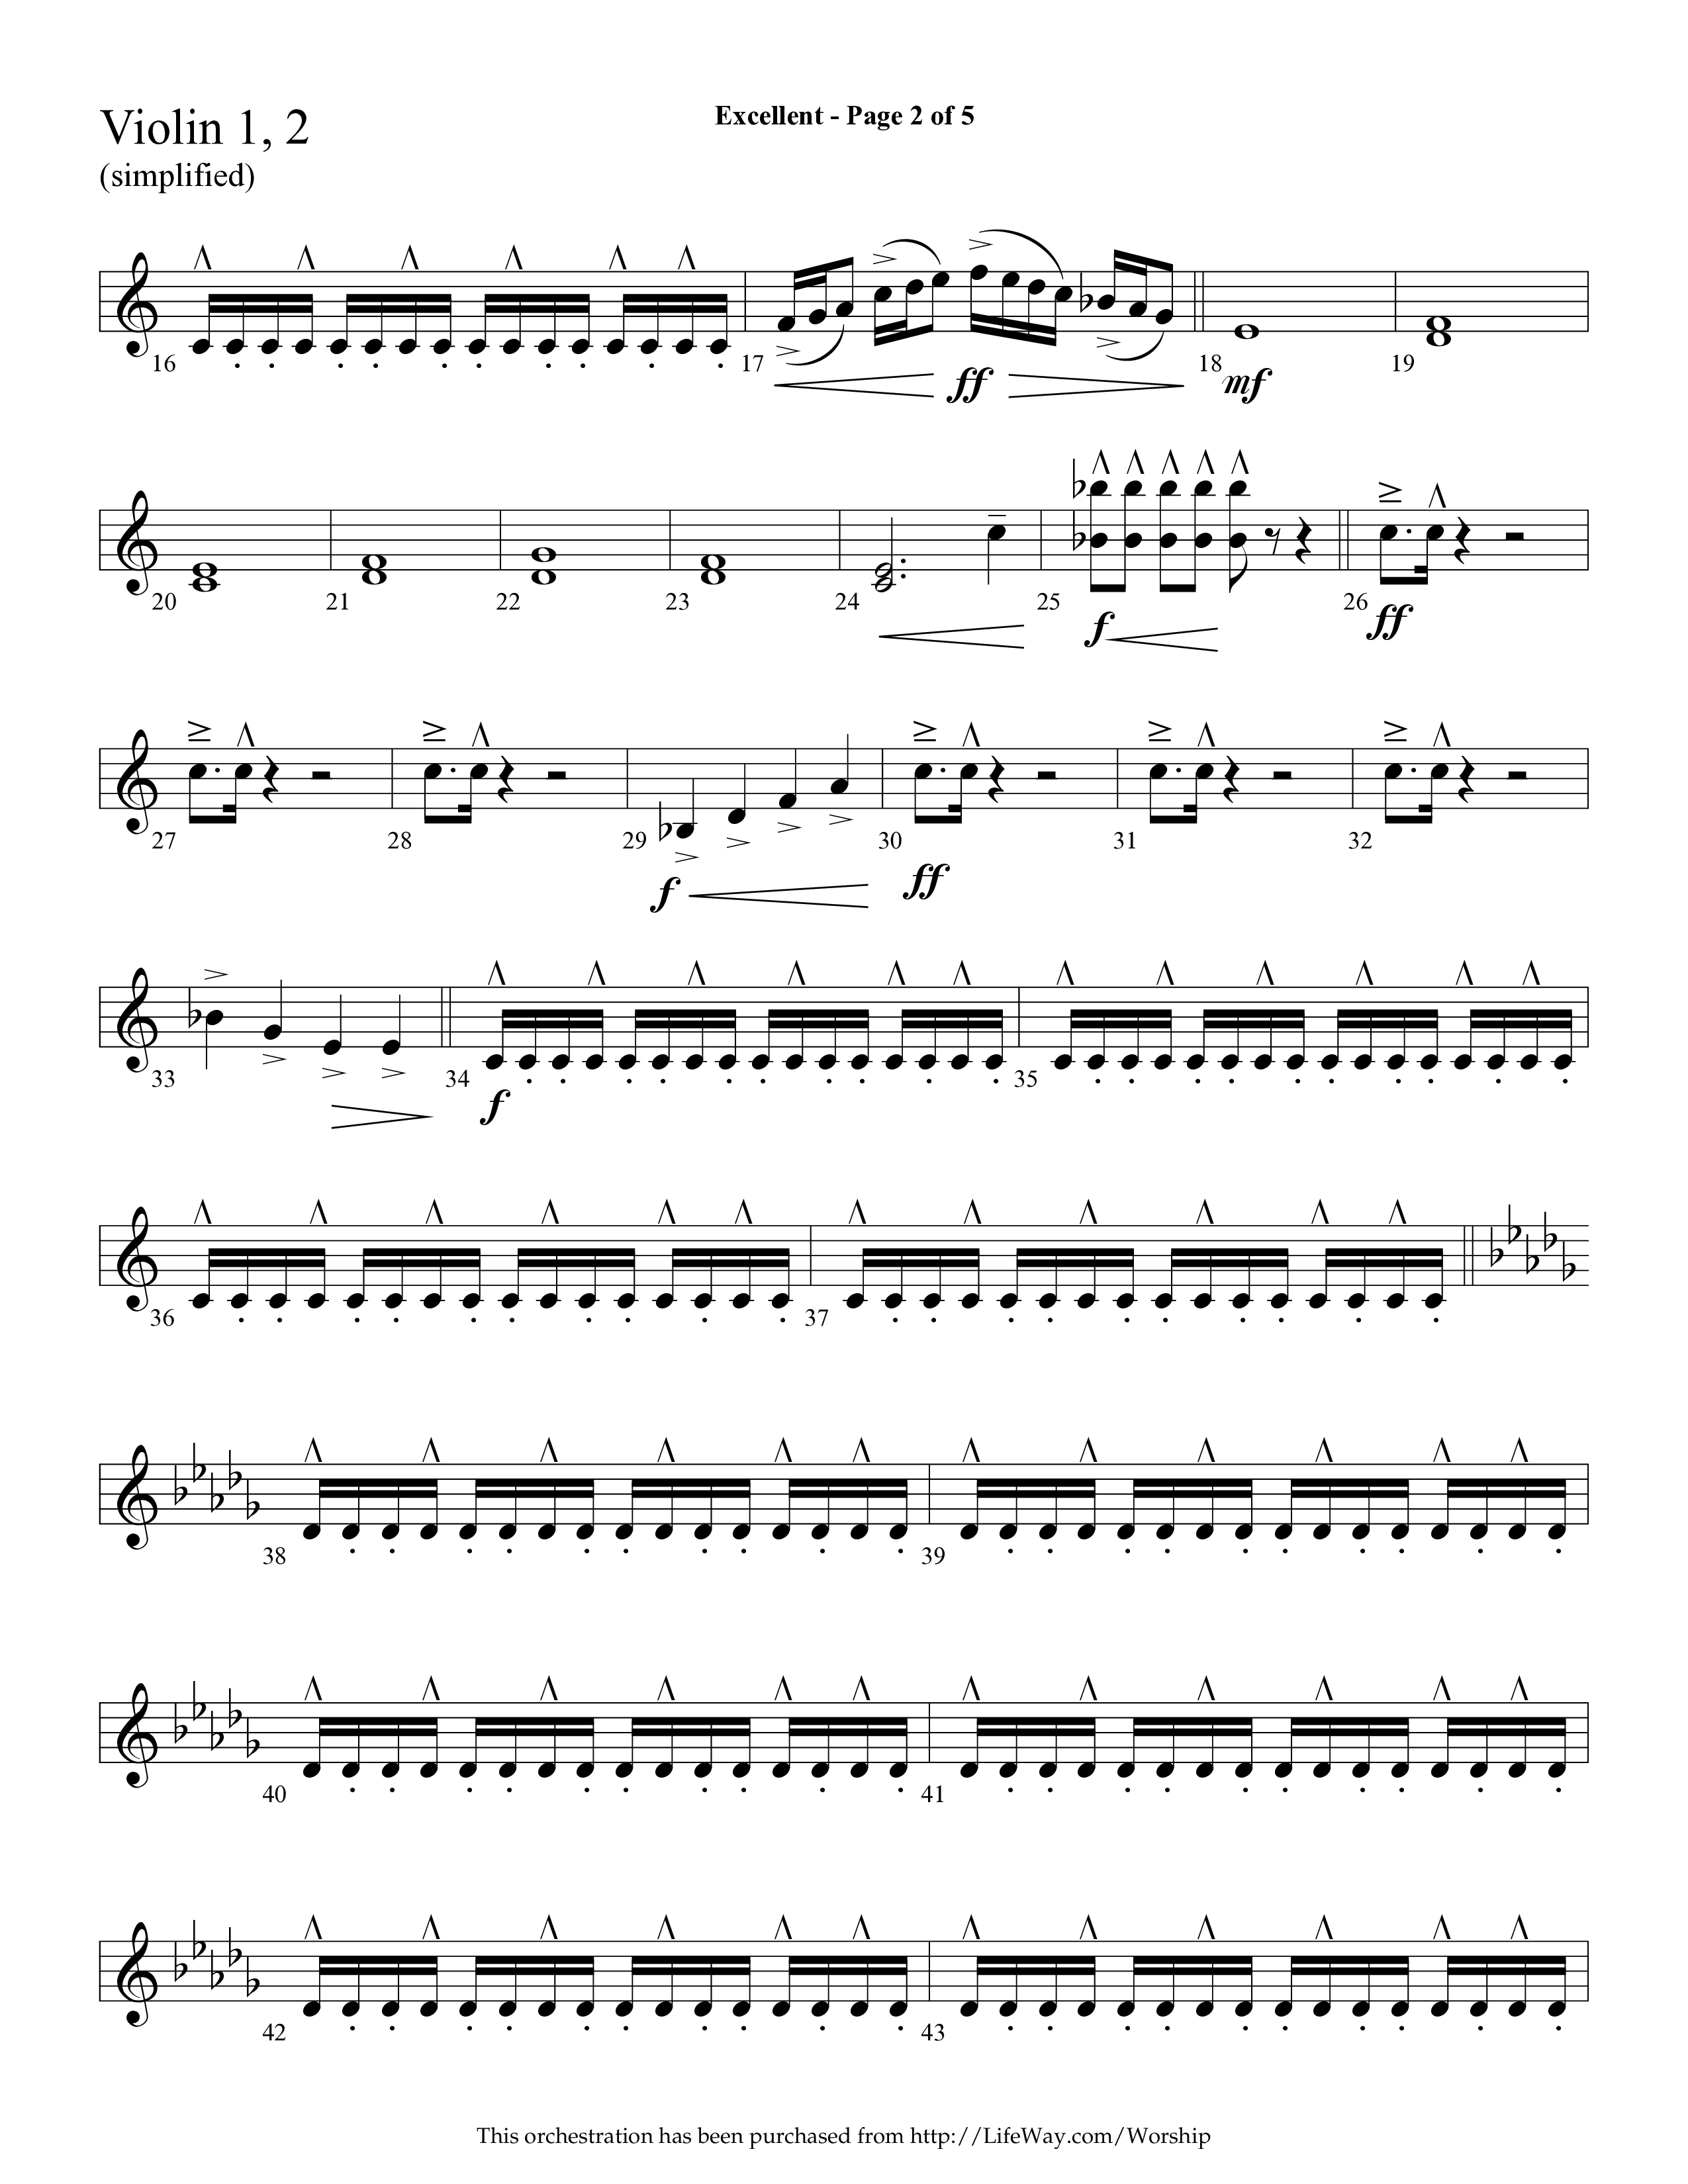 Excellent (Choral Anthem SATB) Violin 1/2 (Lifeway Choral / Arr. Cliff Duren)